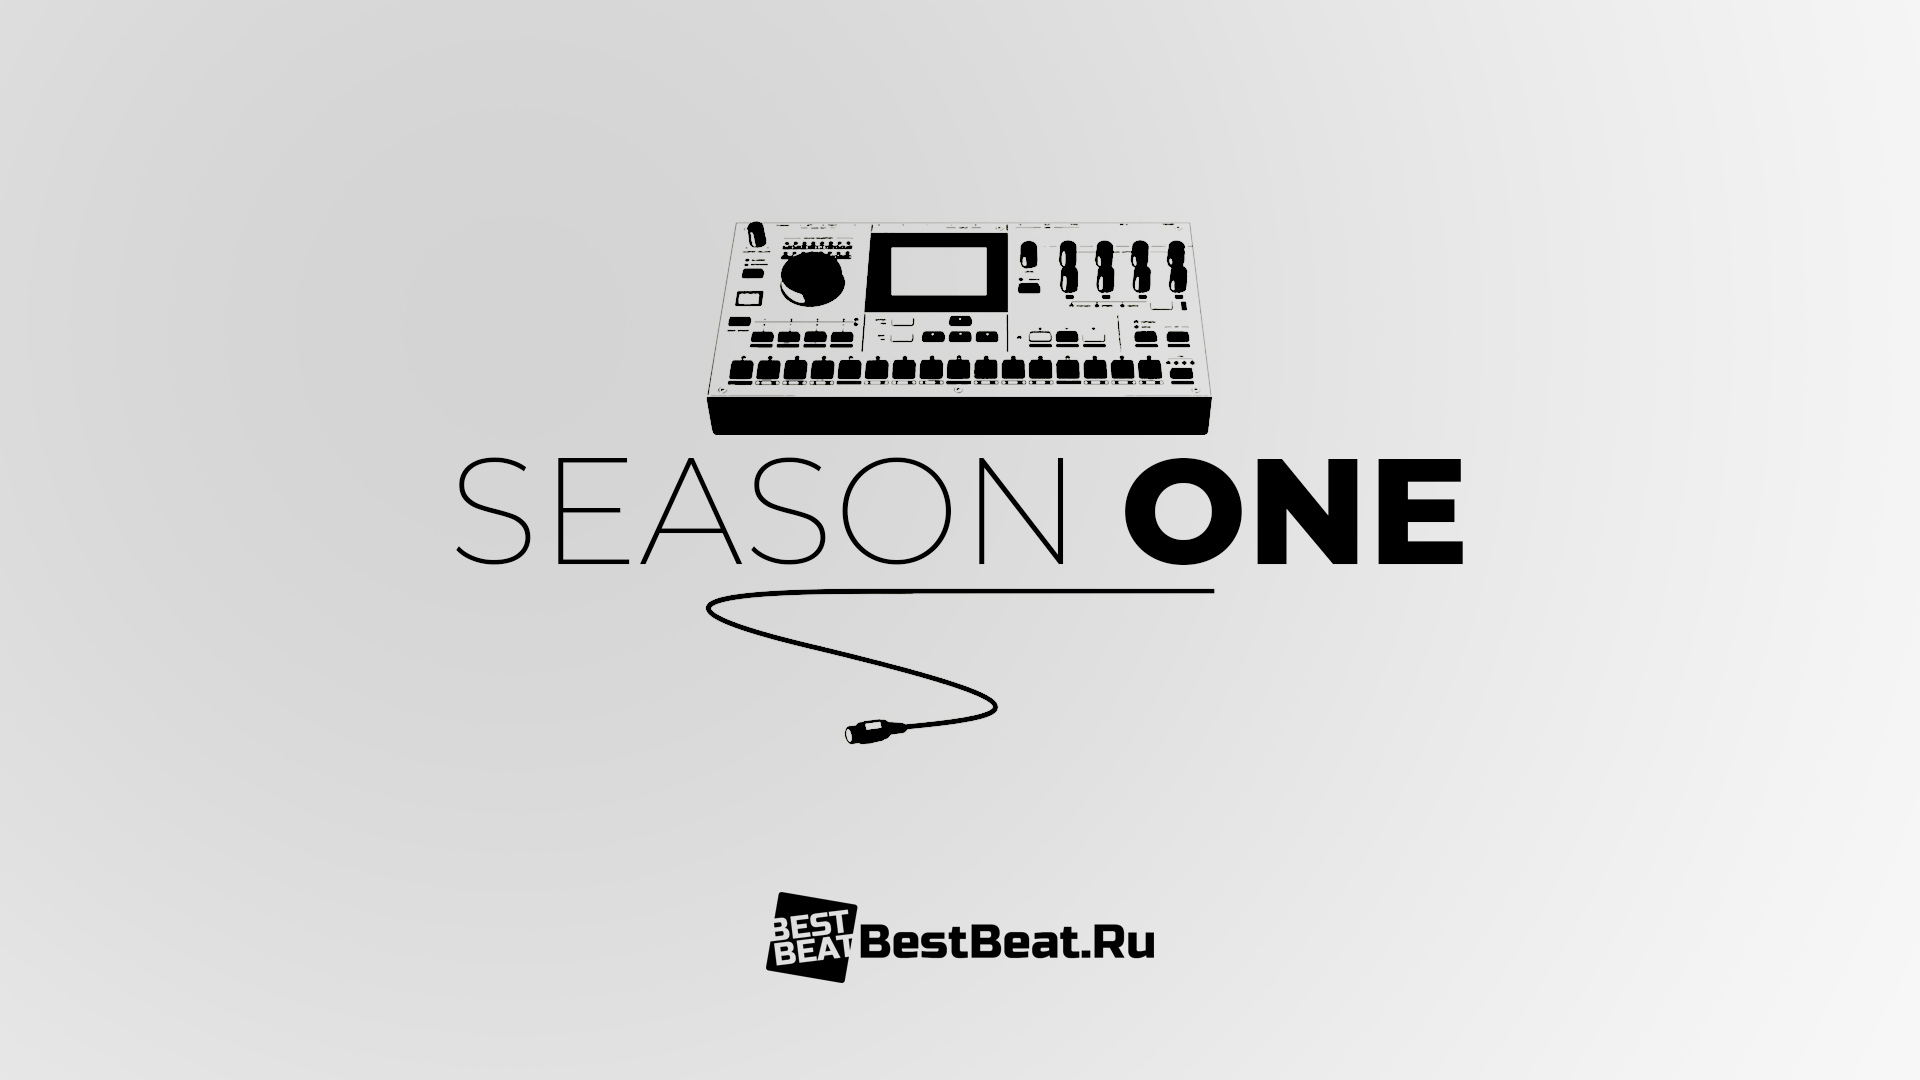 Встречайте, сезоны BestBeat.Ru!